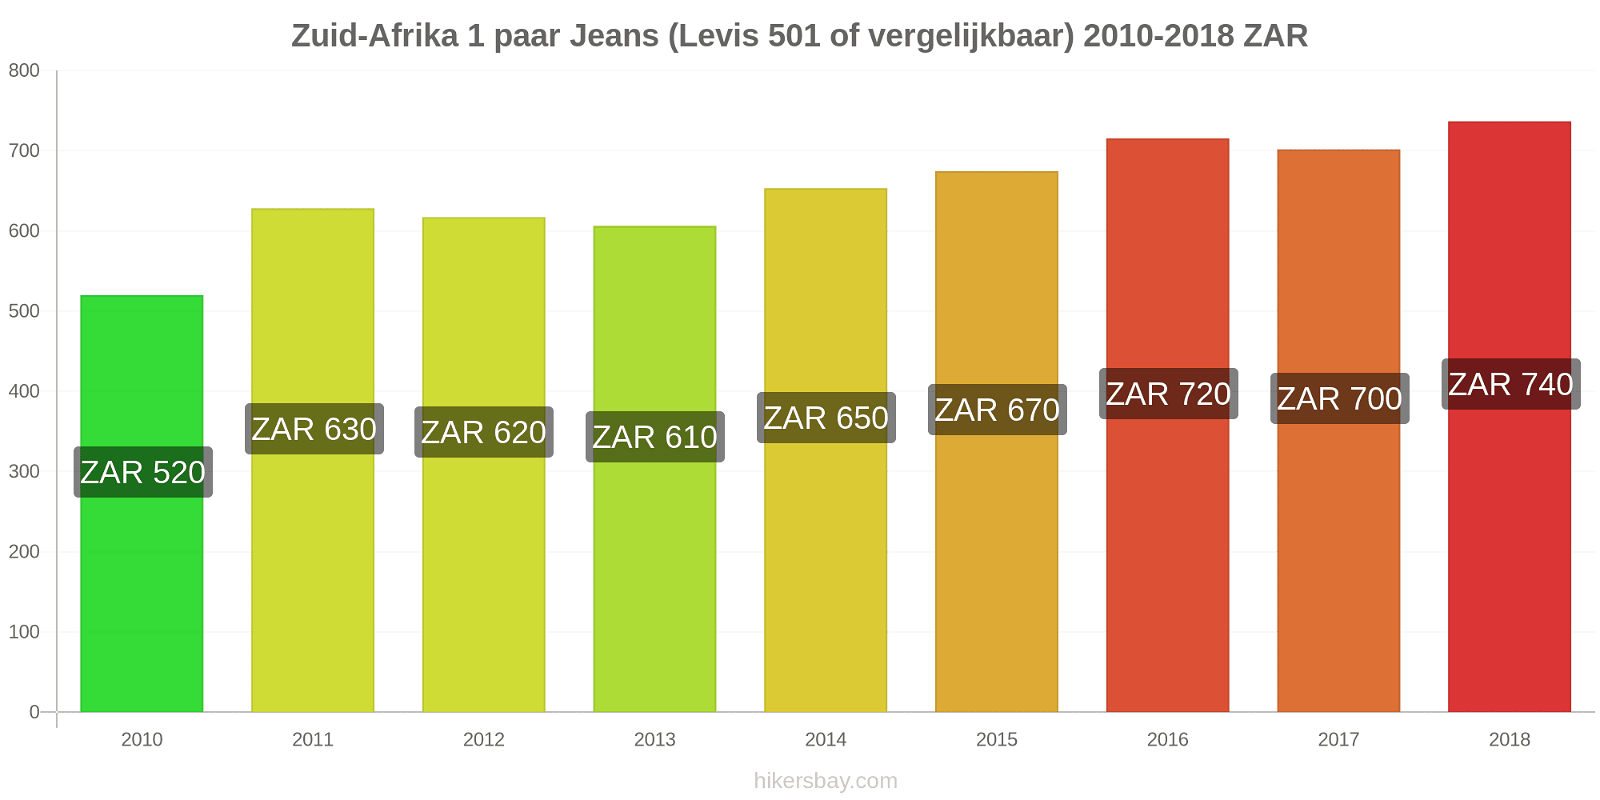 Zuid-Afrika prijswijzigingen 1 paar jeans (Levis 501 of vergelijkbaar) hikersbay.com